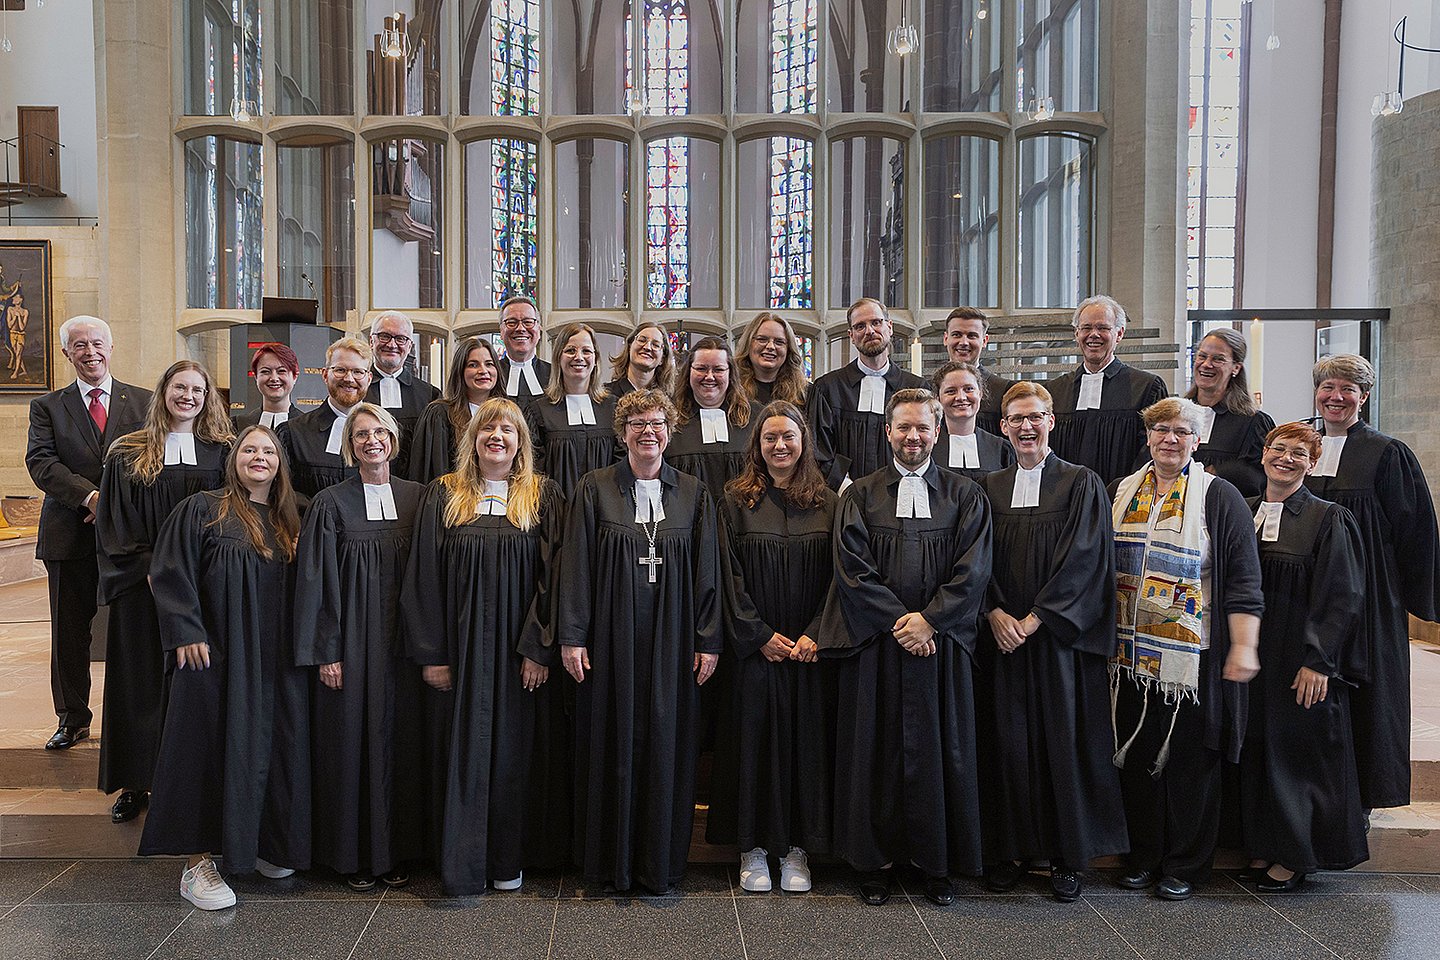 Ordination am Pfingstsonntag in der Martinskirche in Kassel. Gruppenfoto mit allen neuen Pfarrerinnen, Pfarrern und Beteiligten. 